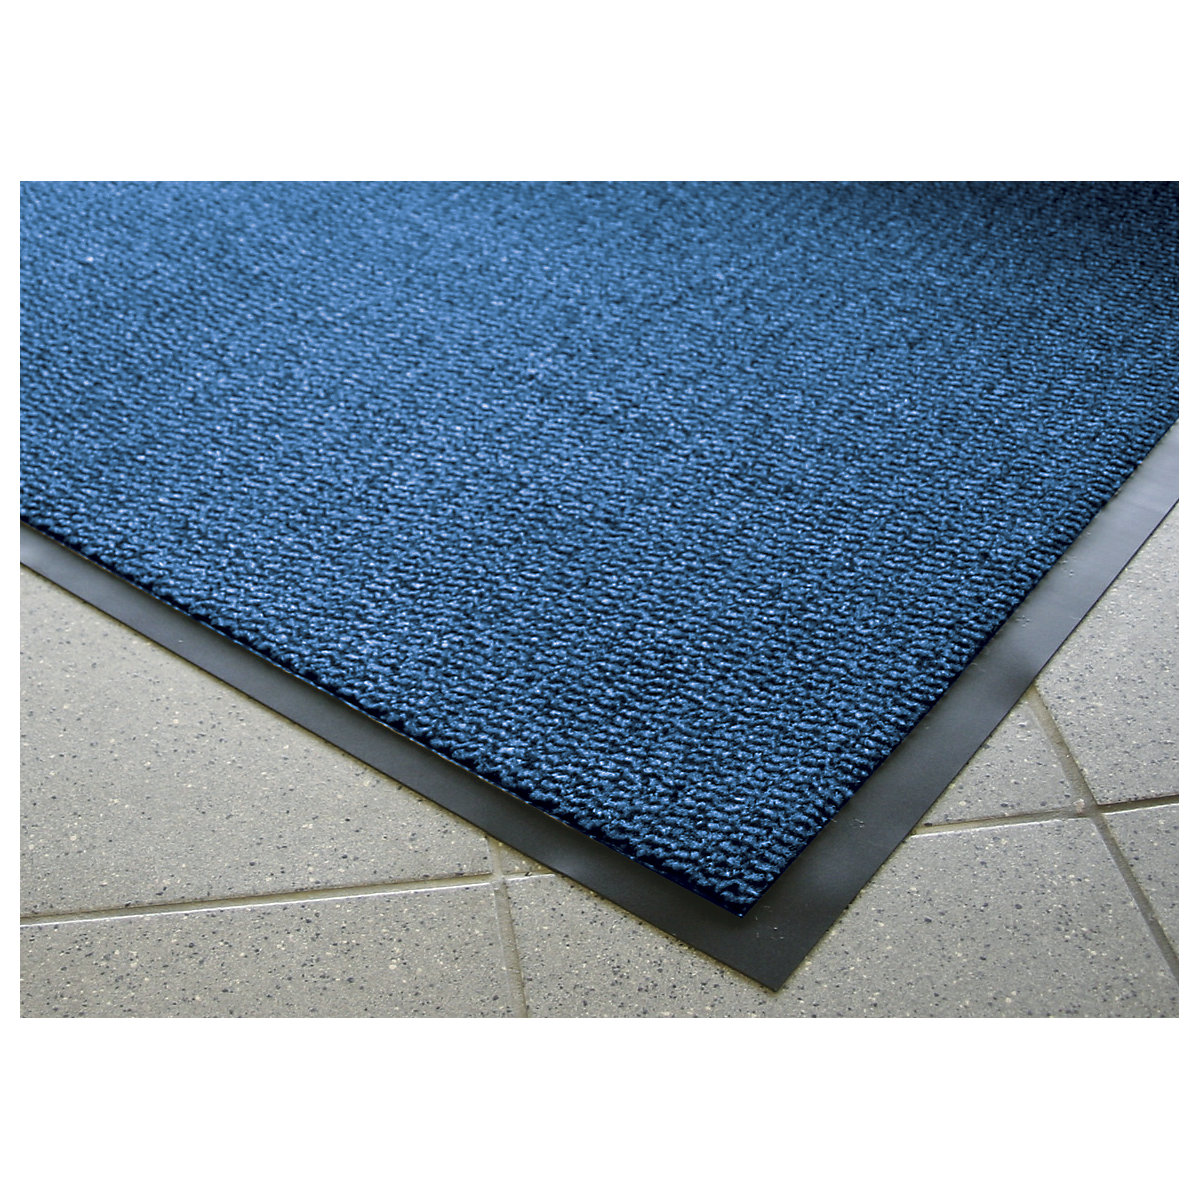 Entrance matting for indoor use, polypropylene pile – COBA